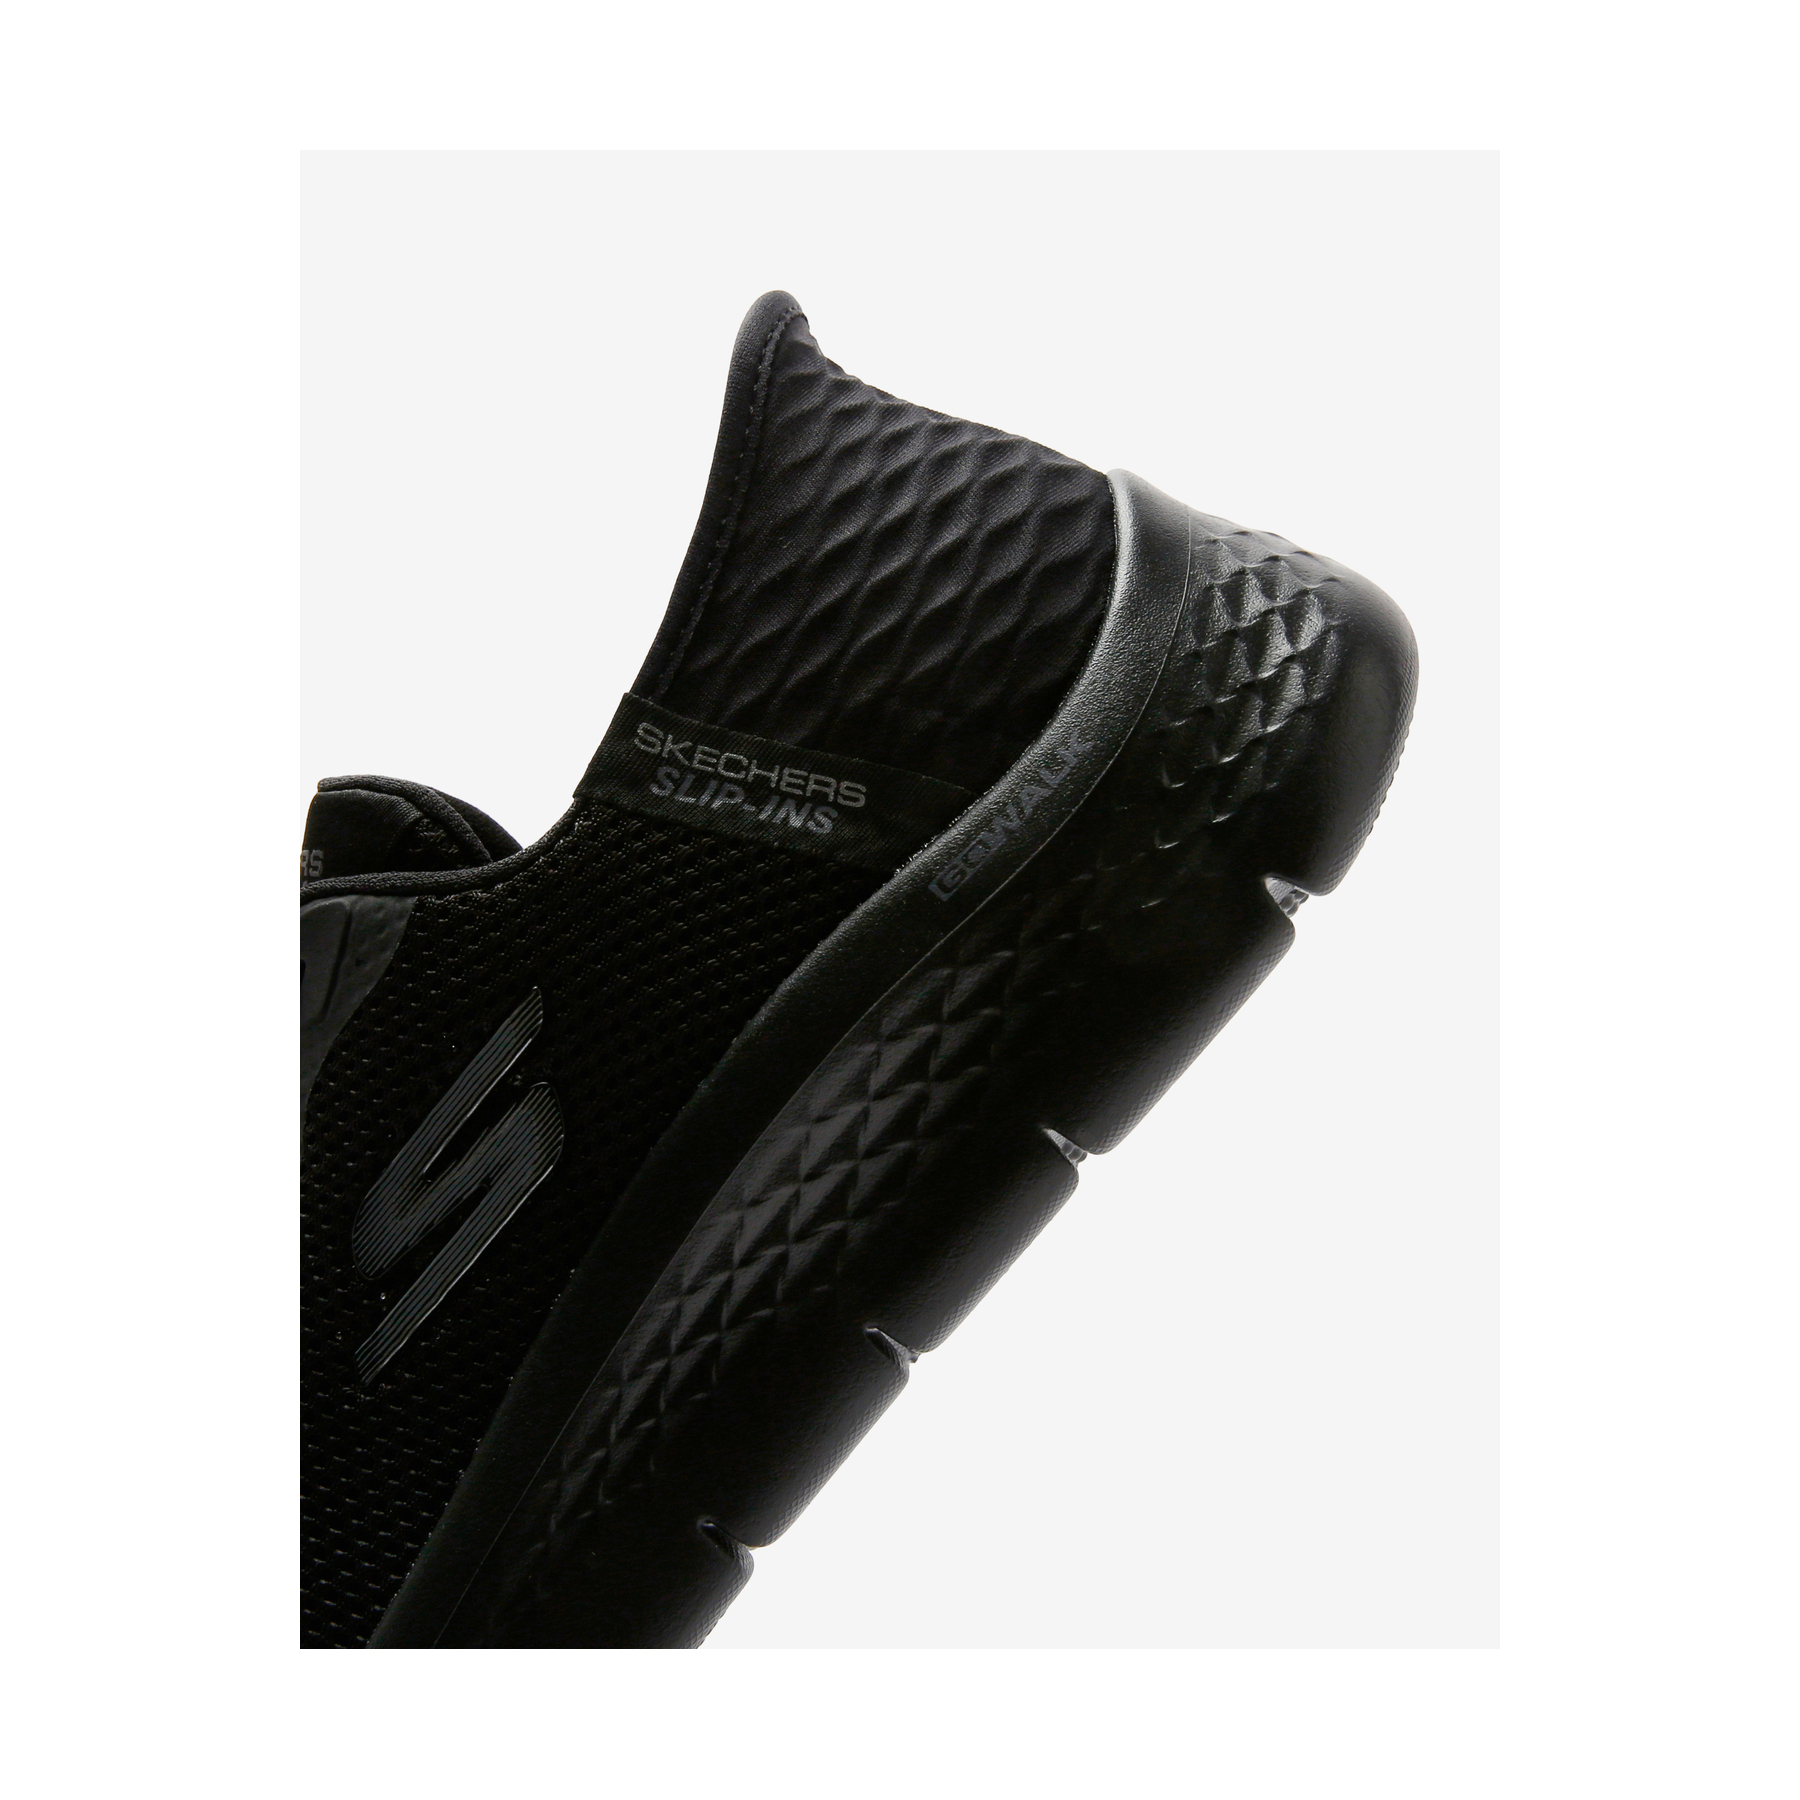 Skechers Go Walk Flex Kadın Siyah Koşu Ayakkabısı (124975TK BBK)